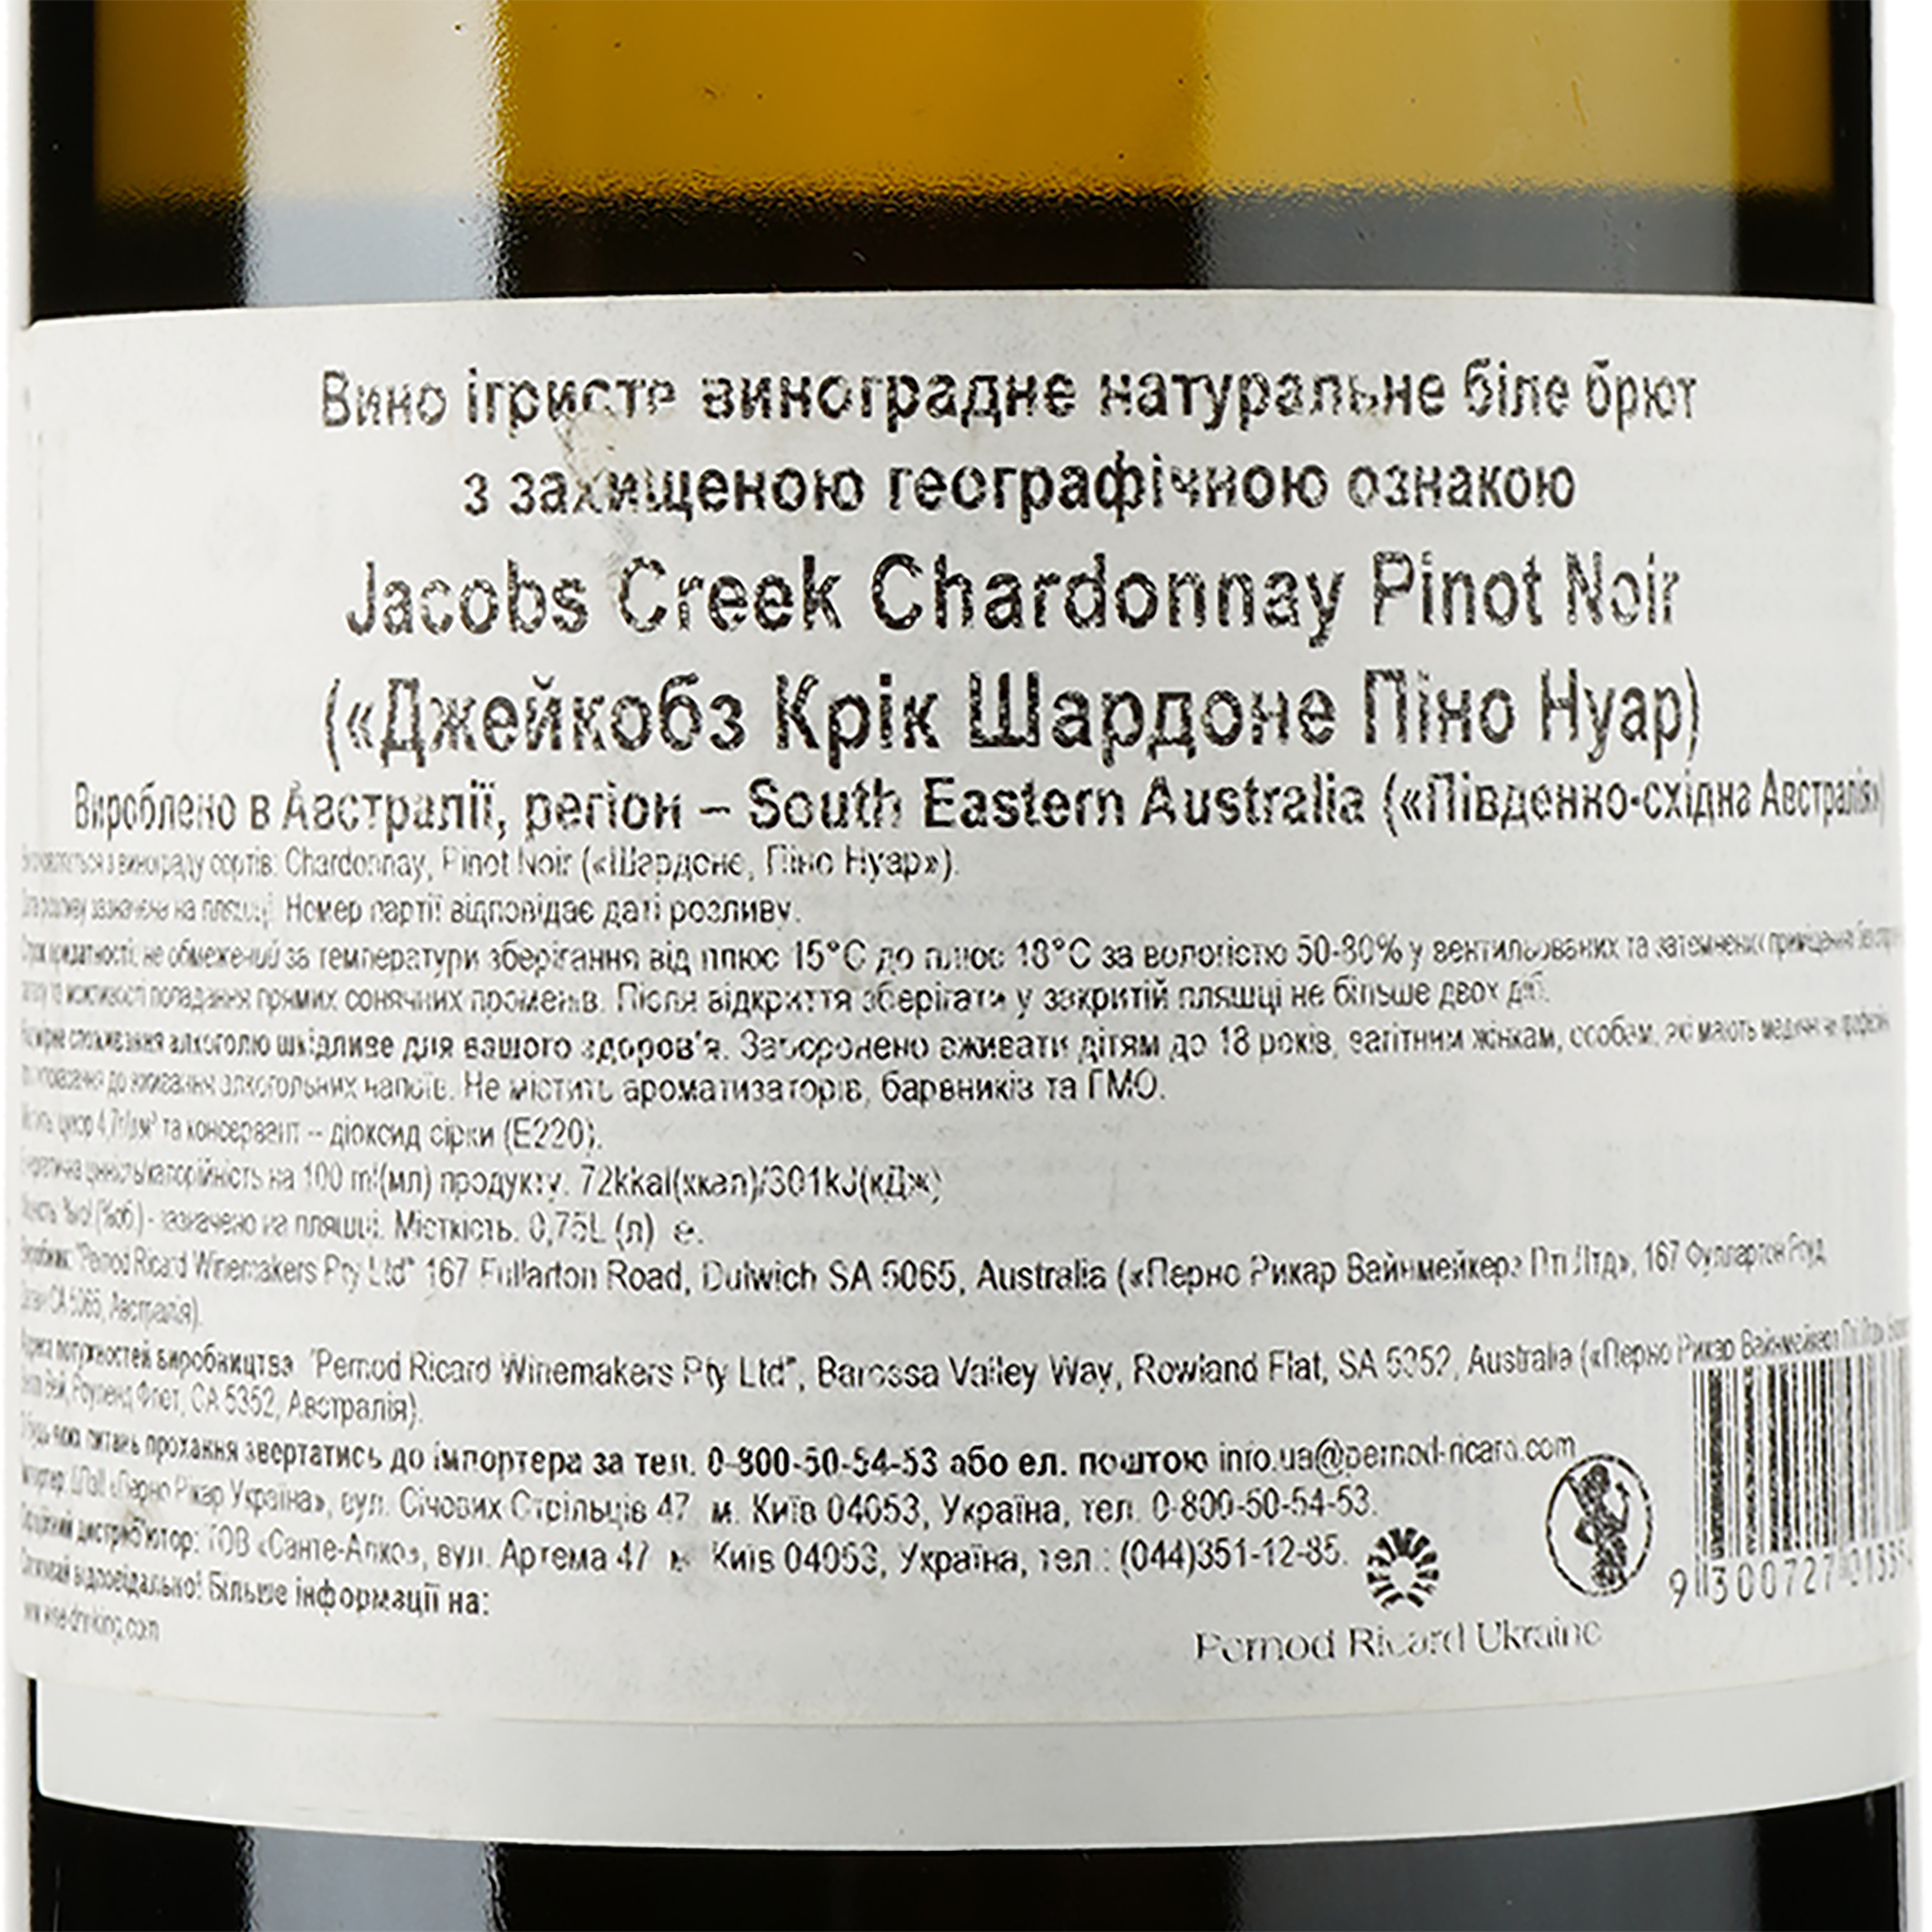 Вино игристое Jacob's Creek Chardonnay Pinot Noir, белое, сухое,11,5 %, 0,75 л (2003) - фото 3